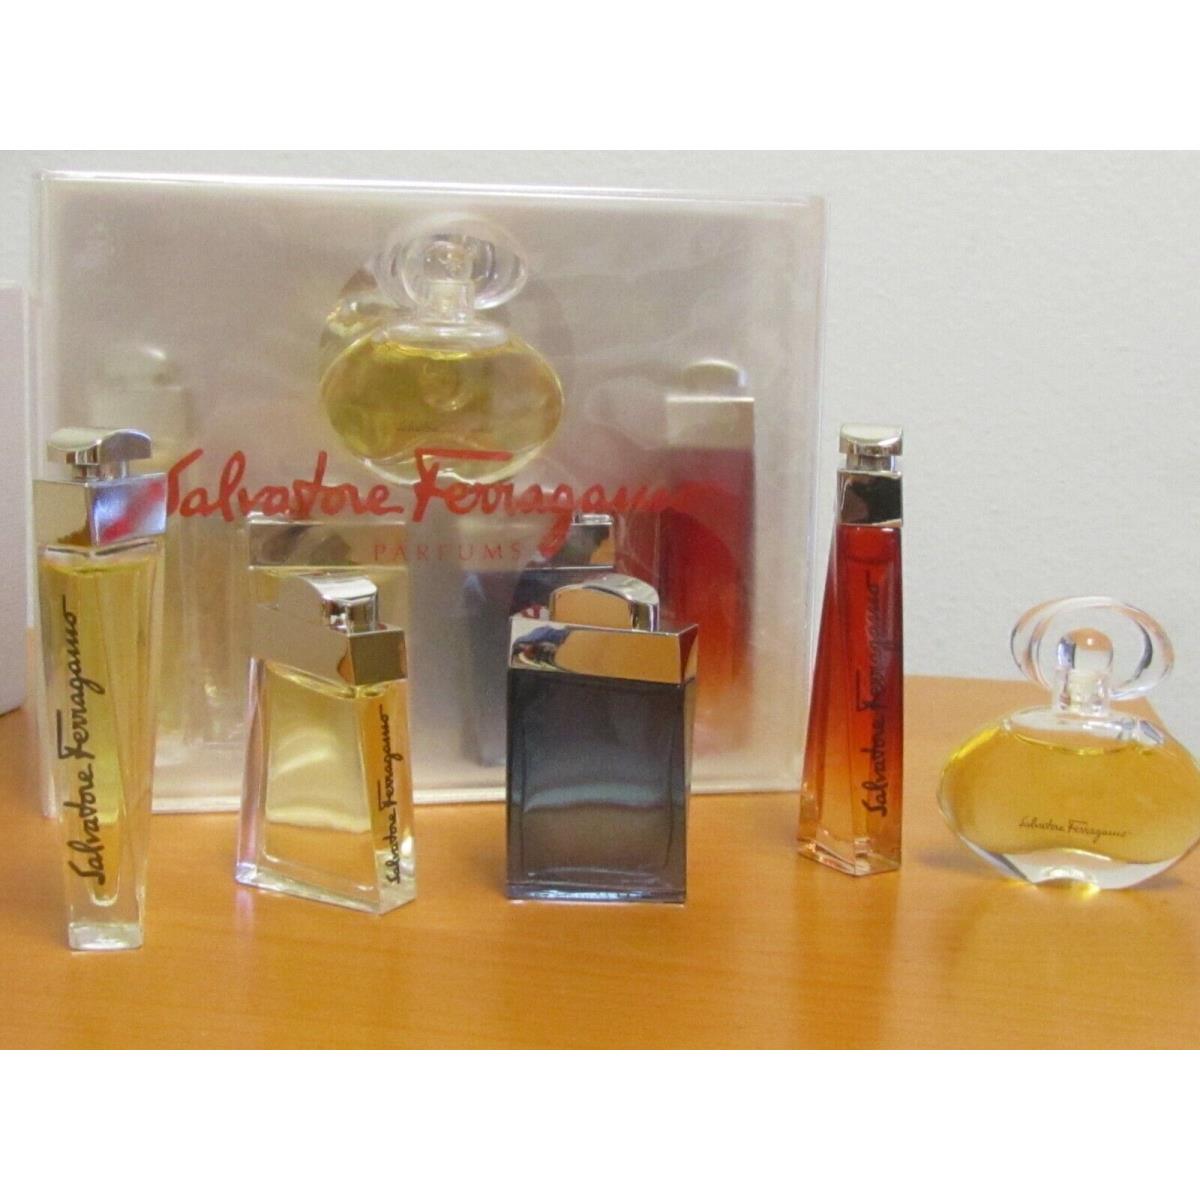 Salvatore Ferragamo Gift Set Perfume Miniature For Women 5 Pcs